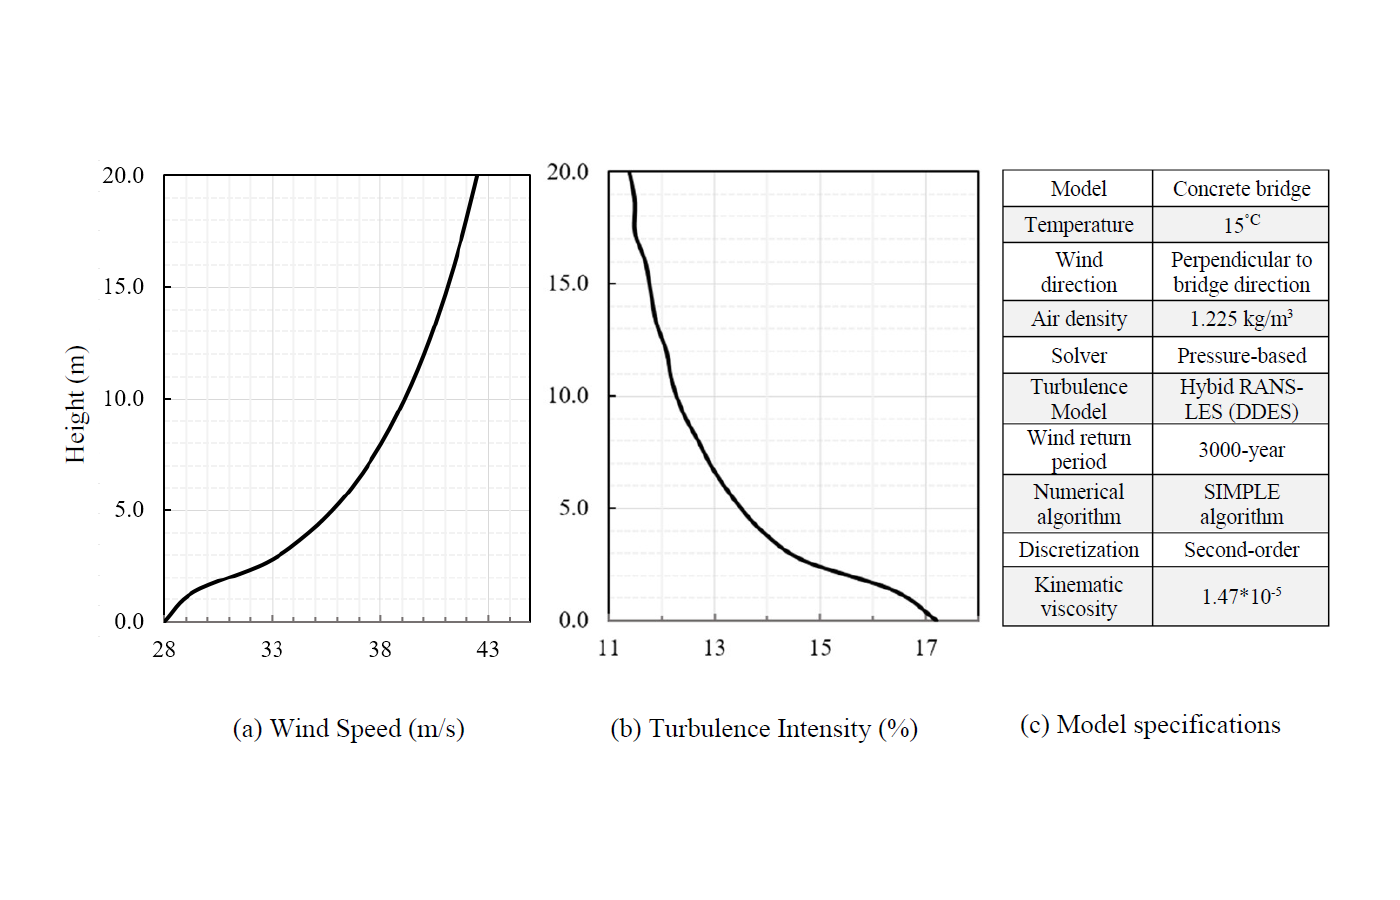 Rys. Drugi Wartość obliczeniowa dla informacji o okresie zwrotu 3000 lat: (a) Prędkość wiatru oraz (b) Profil intensywności turbulencji oraz (c) Specyfikacje modelu